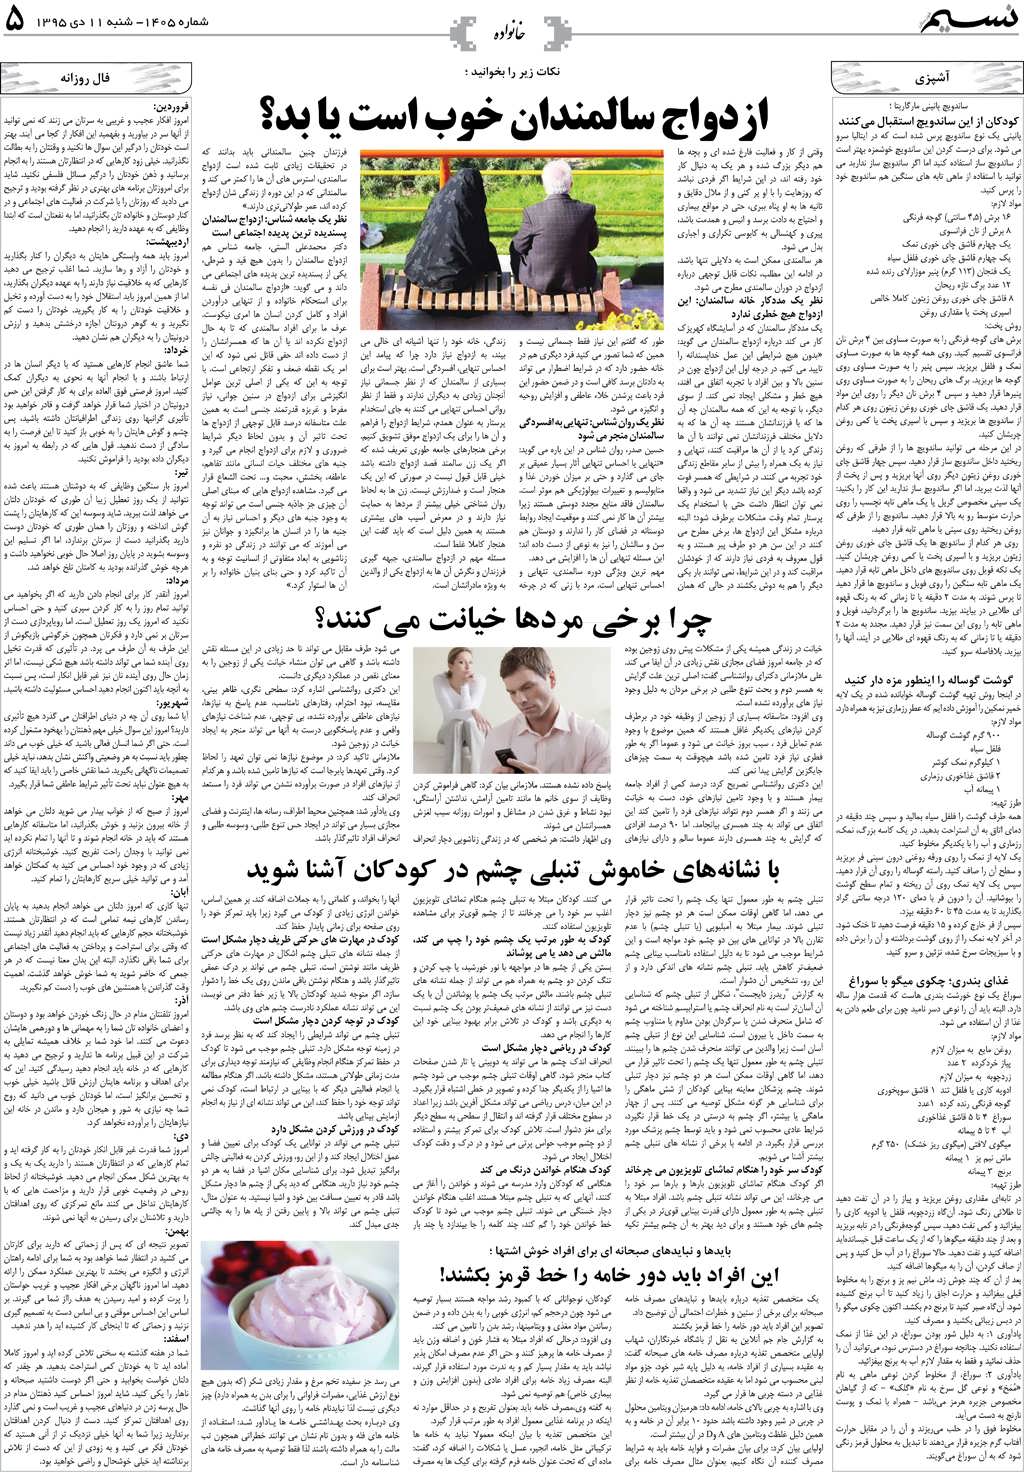 صفحه خانواده روزنامه نسیم شماره 1405